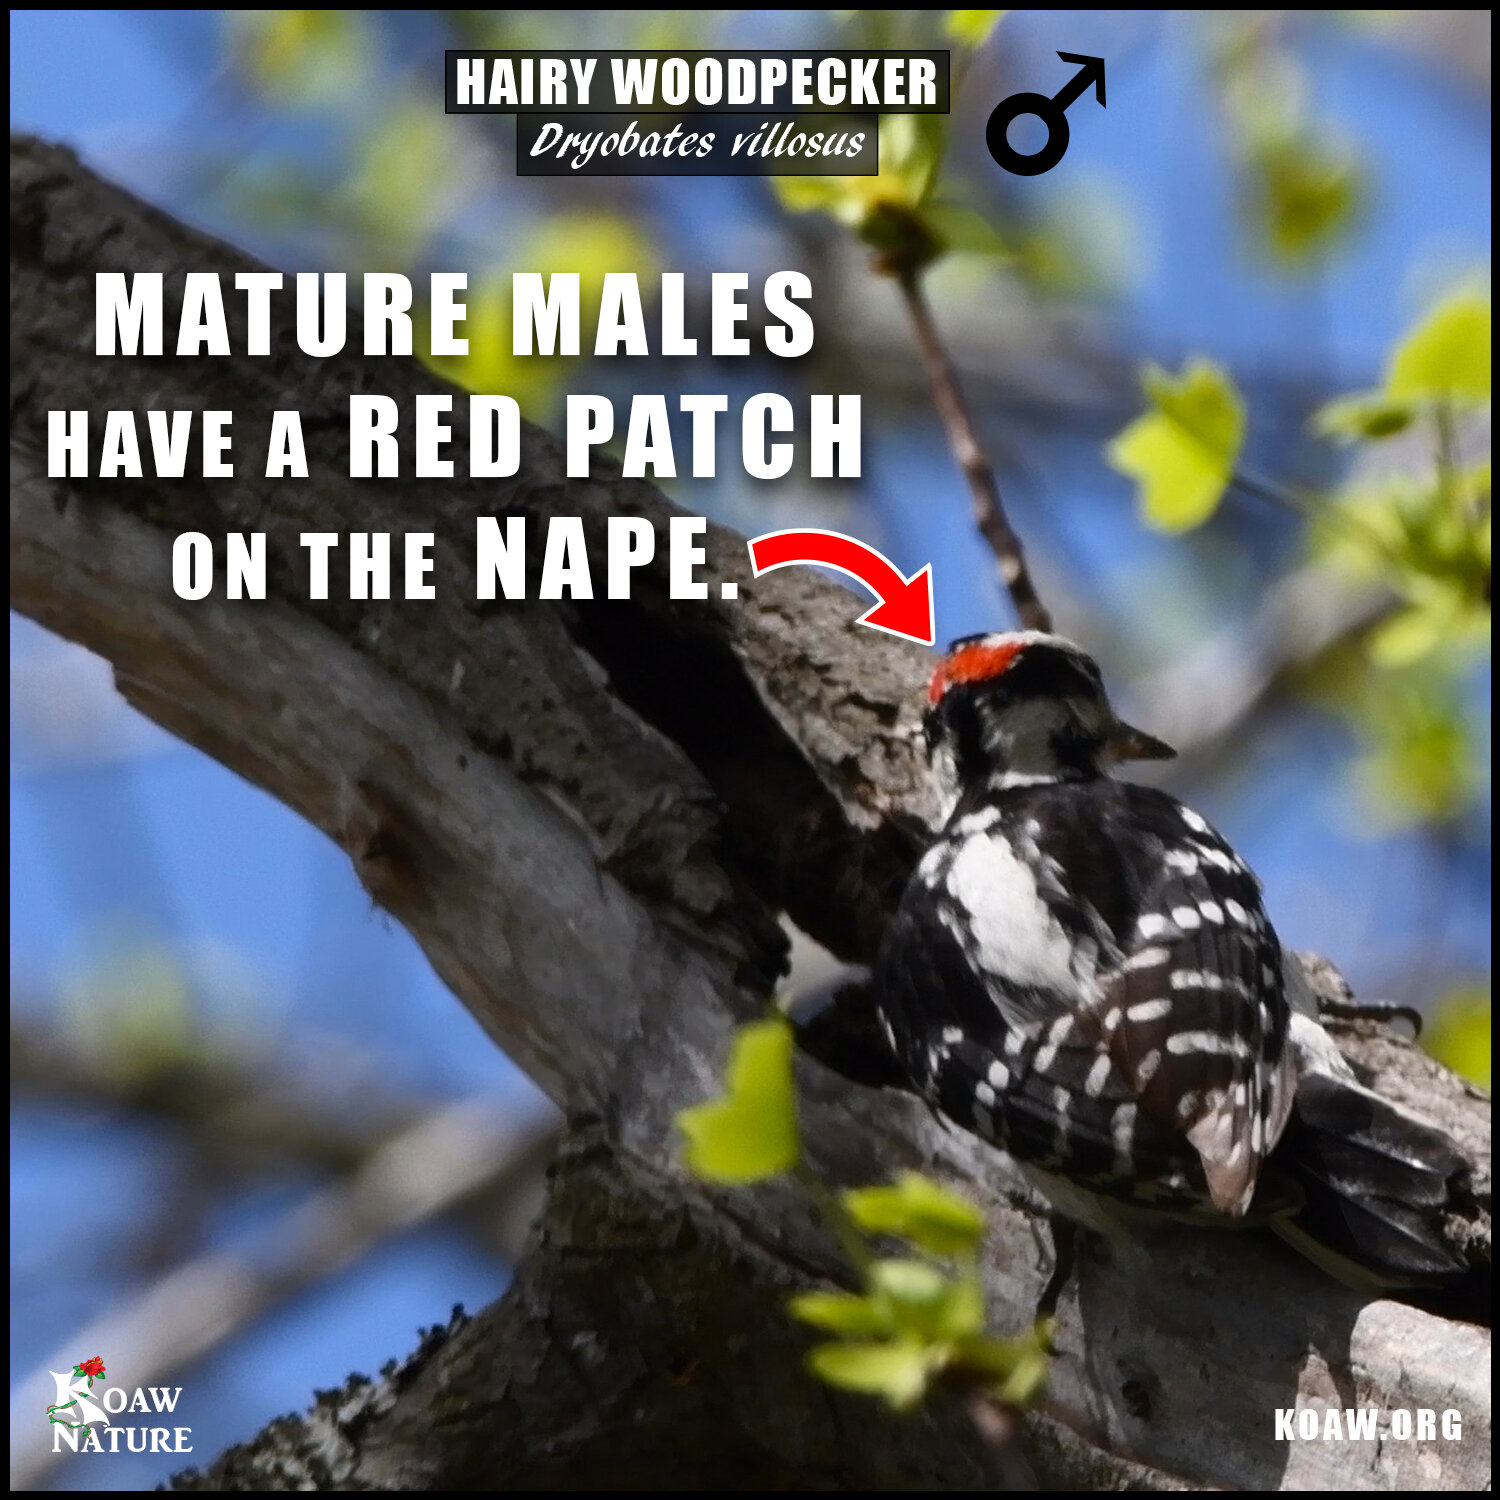 Male Hairy Woodpecker Koaw Nature.jpg